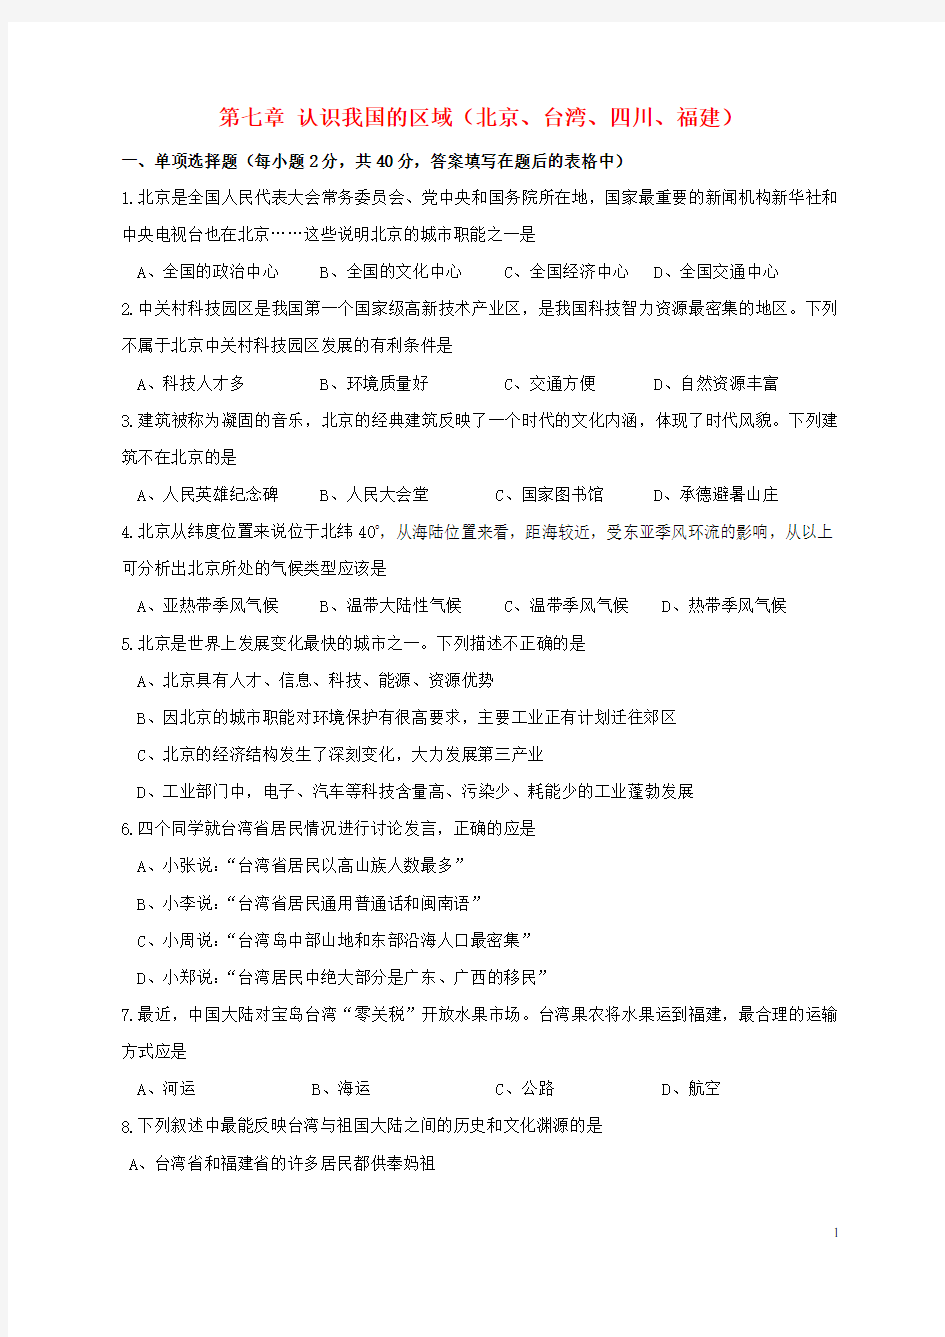 七年级地理下册第七章认识我国的区域(北京、台湾、四川、福建)单元综合测试题中图版